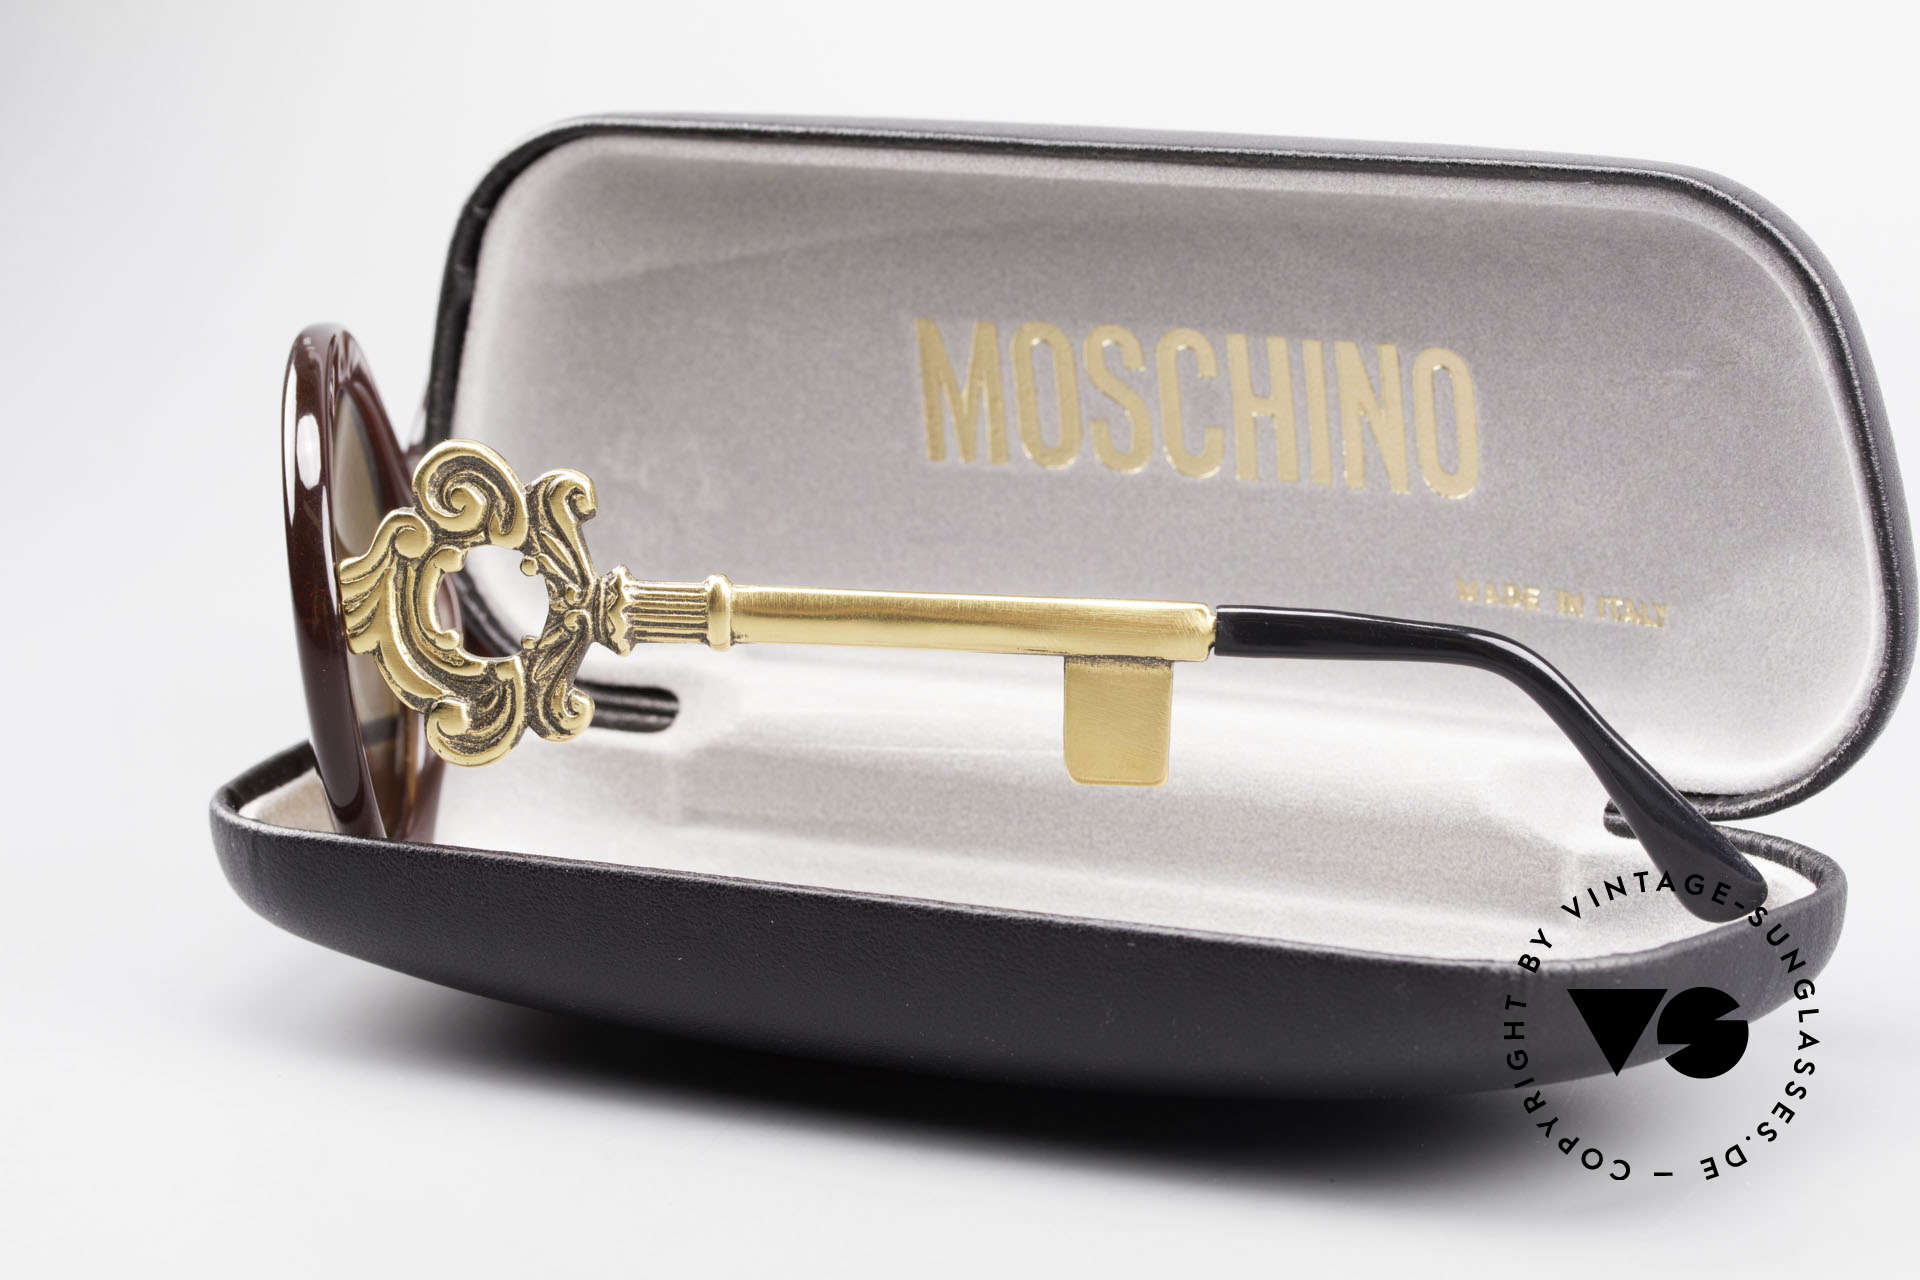 Moschino M254 Antique Key Sunglasses Rare, Size: medium, Made for Women